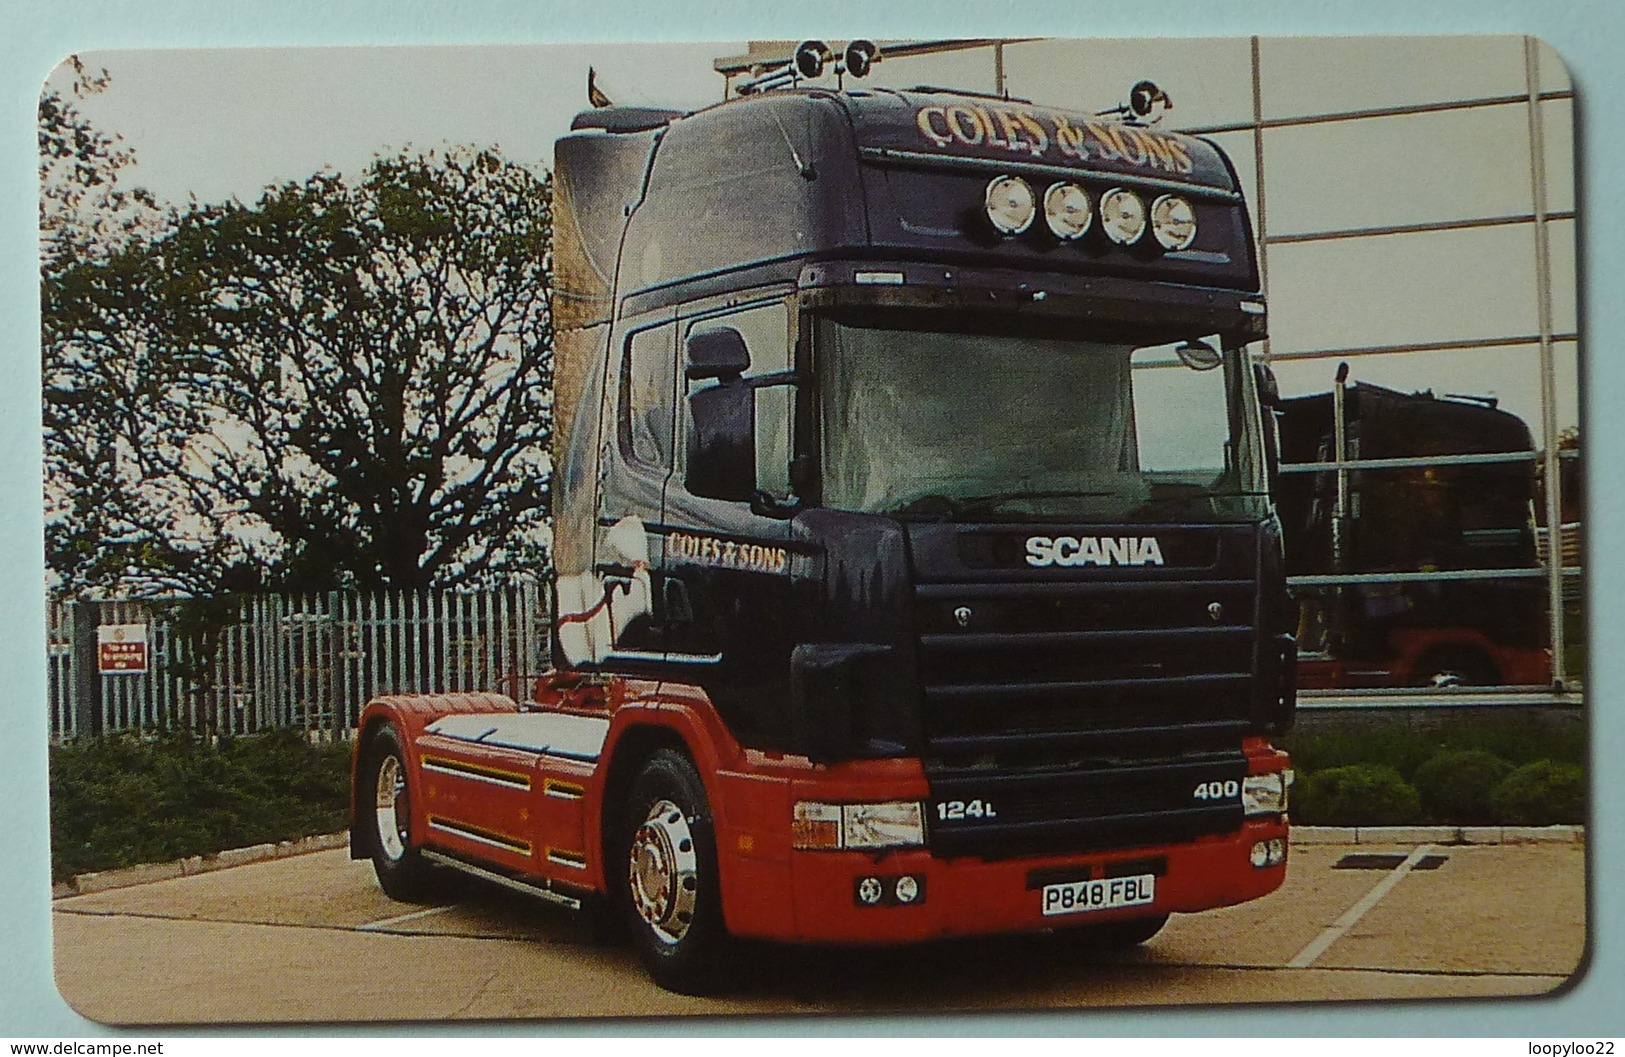 United Kingdom - BT - Chip - PRO261 - Super Trucks No 1 - Coles & Sons - 1000ex - Mint - BT Promociónales